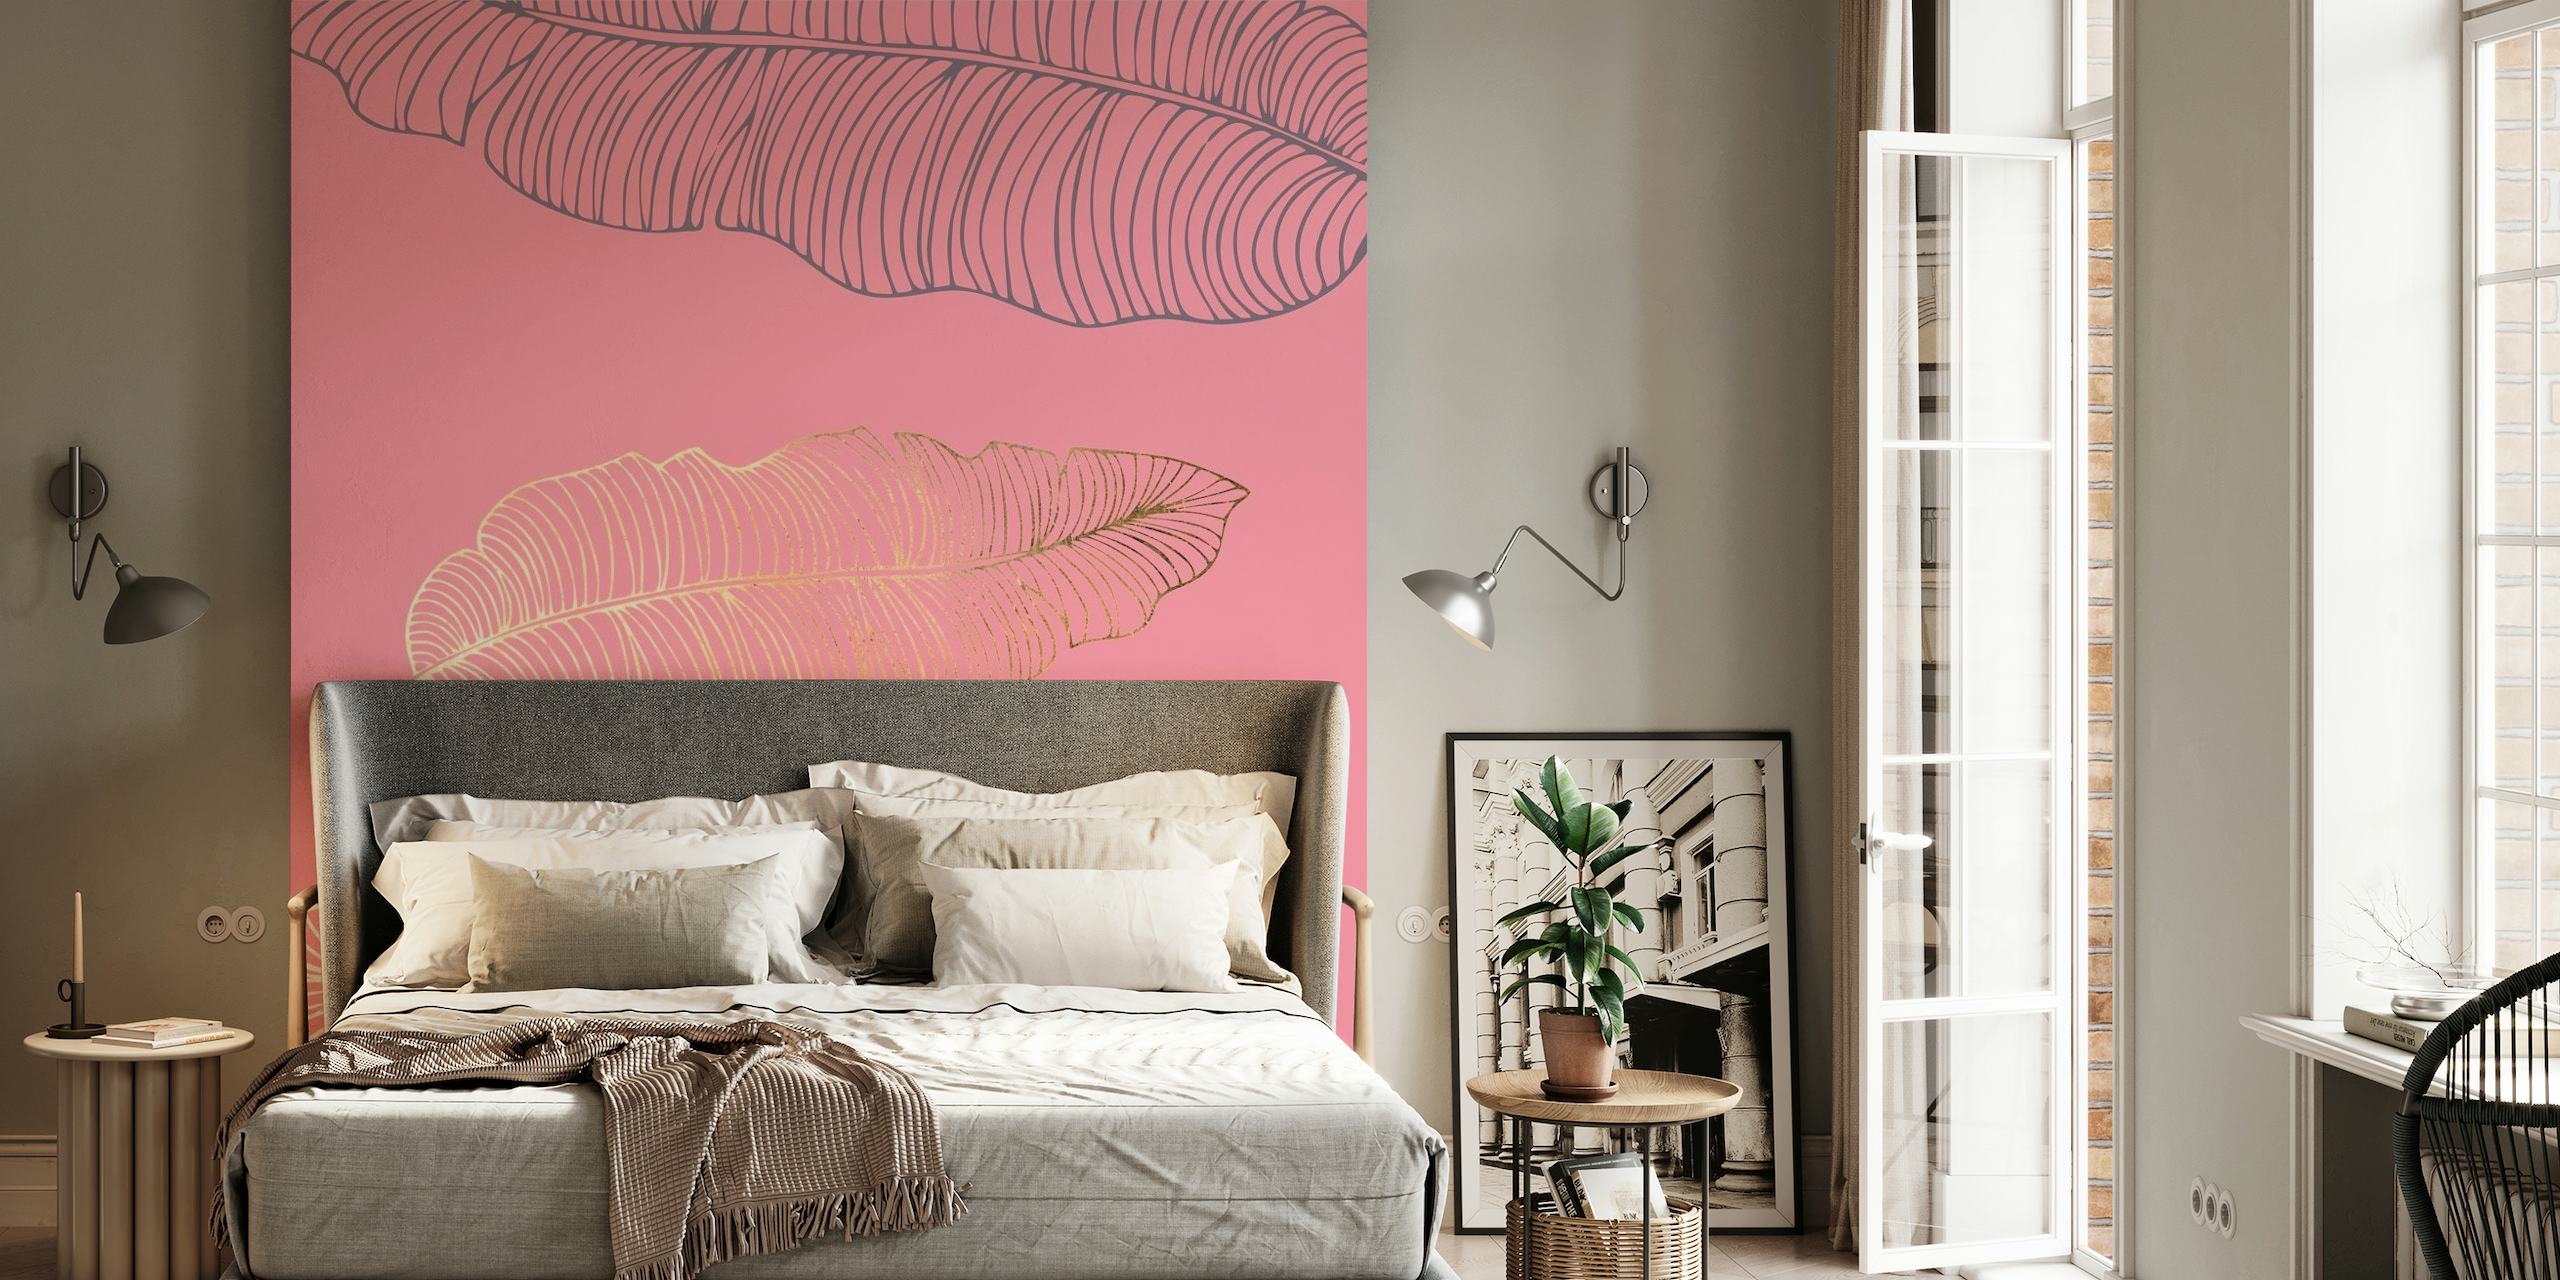 Elegant pink palm leaf design on a subtle pink background for wall mural